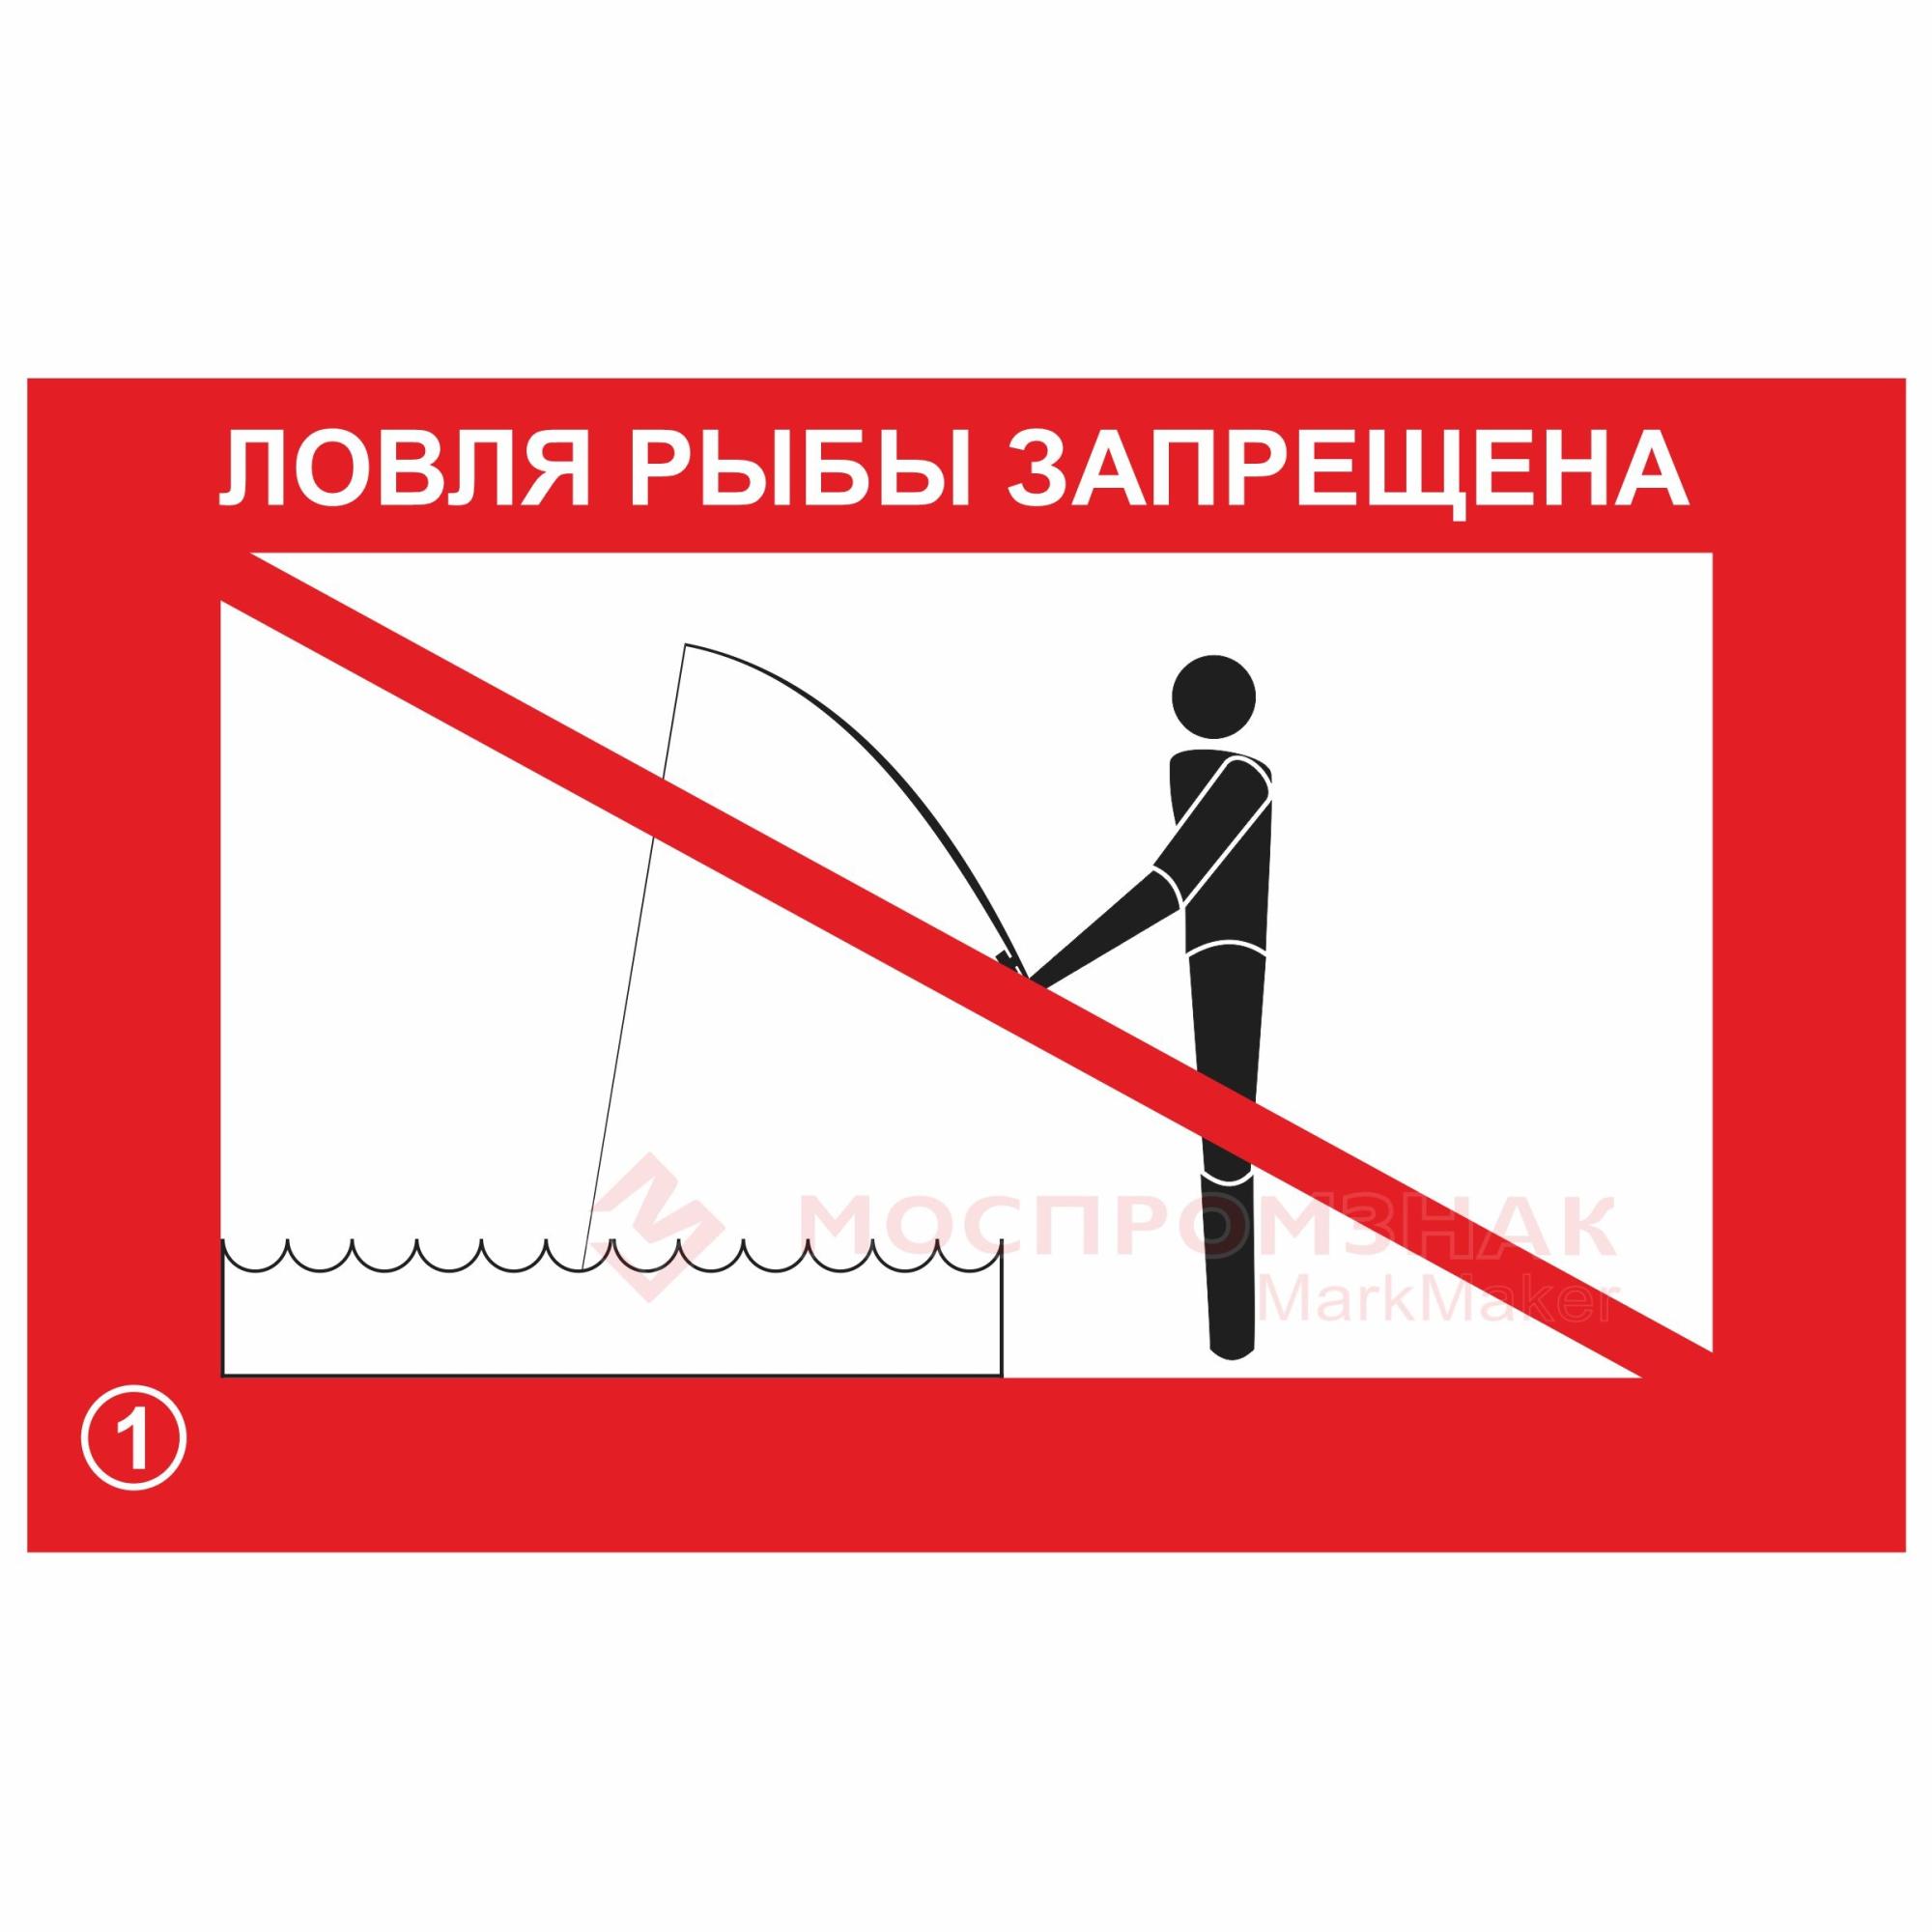 Запрет на лов воблы. Ловля рыбы запрещена. Ловля рыбы запрещена знак. Ловля рыбы запрещена табличка. Рыбная ловля запрещена табличка.